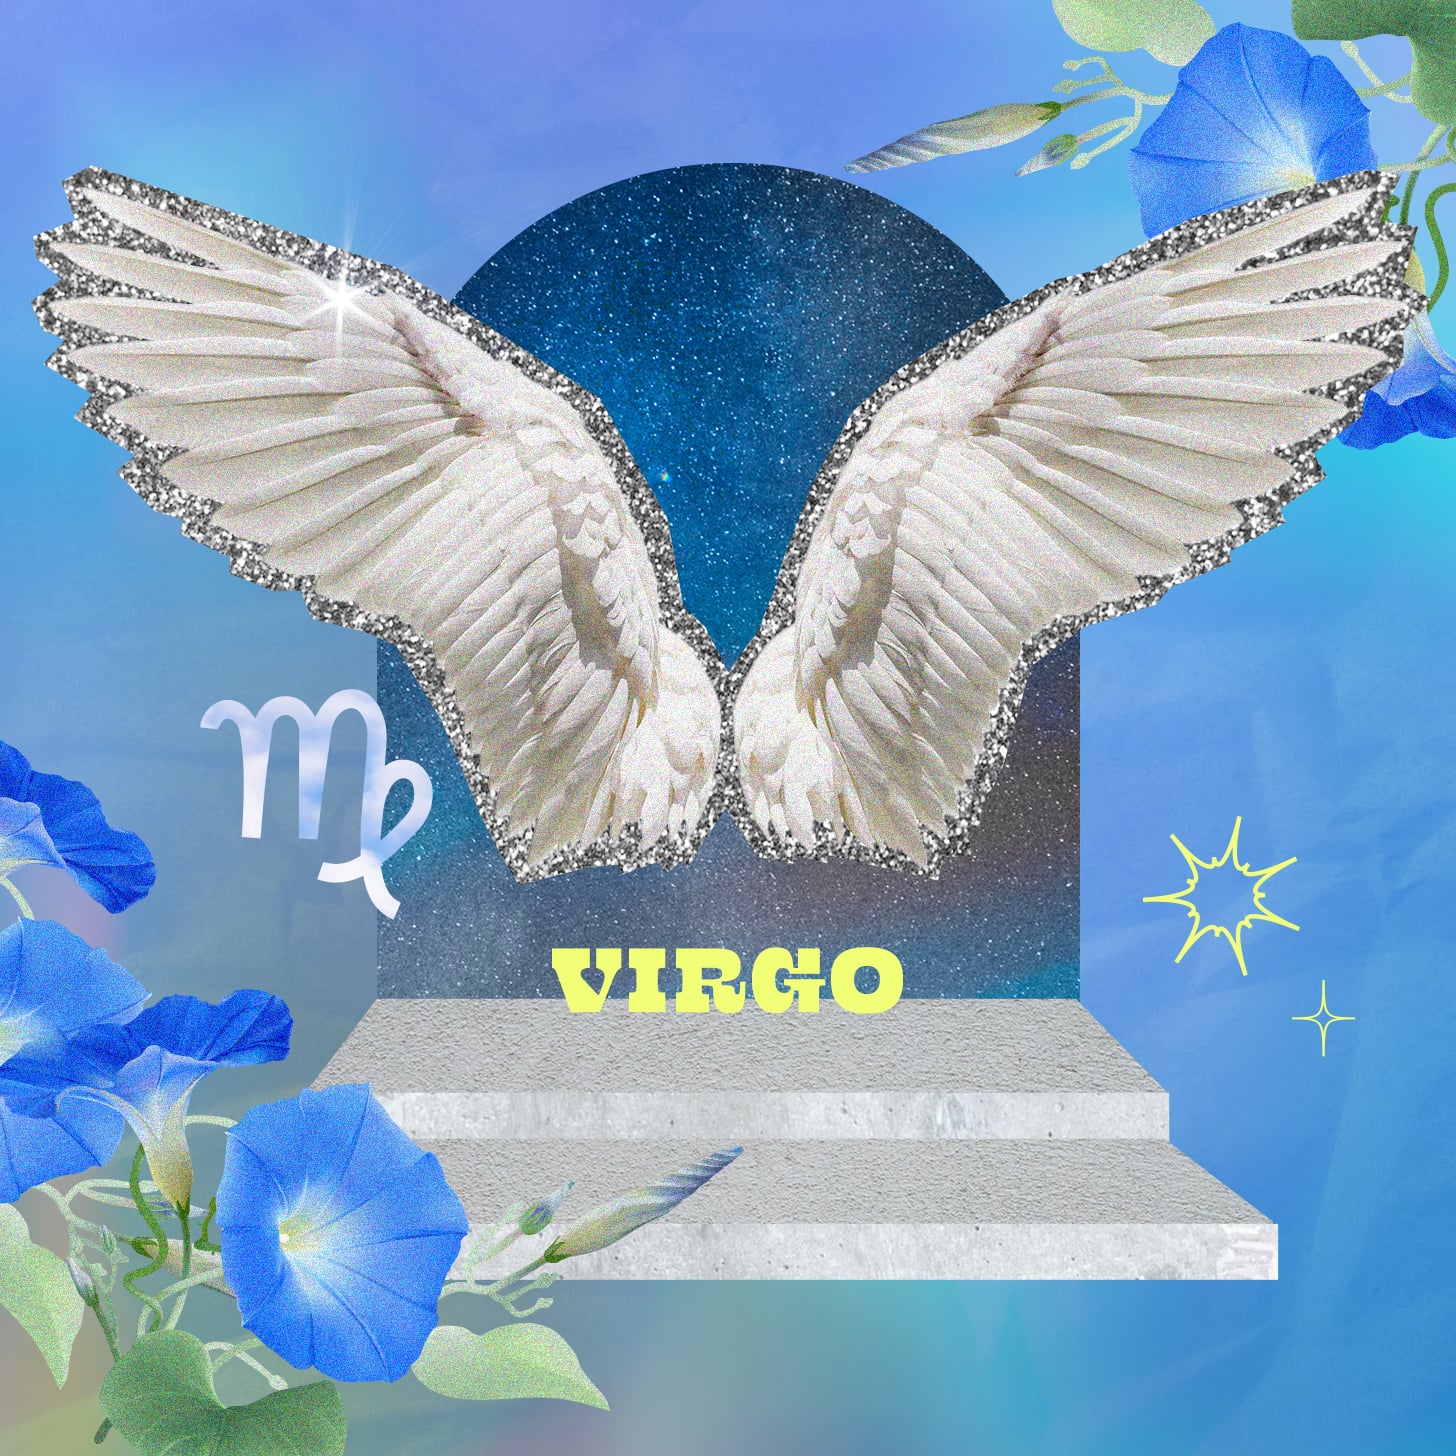 Virgo weekly horoscope for December 18, 2022 